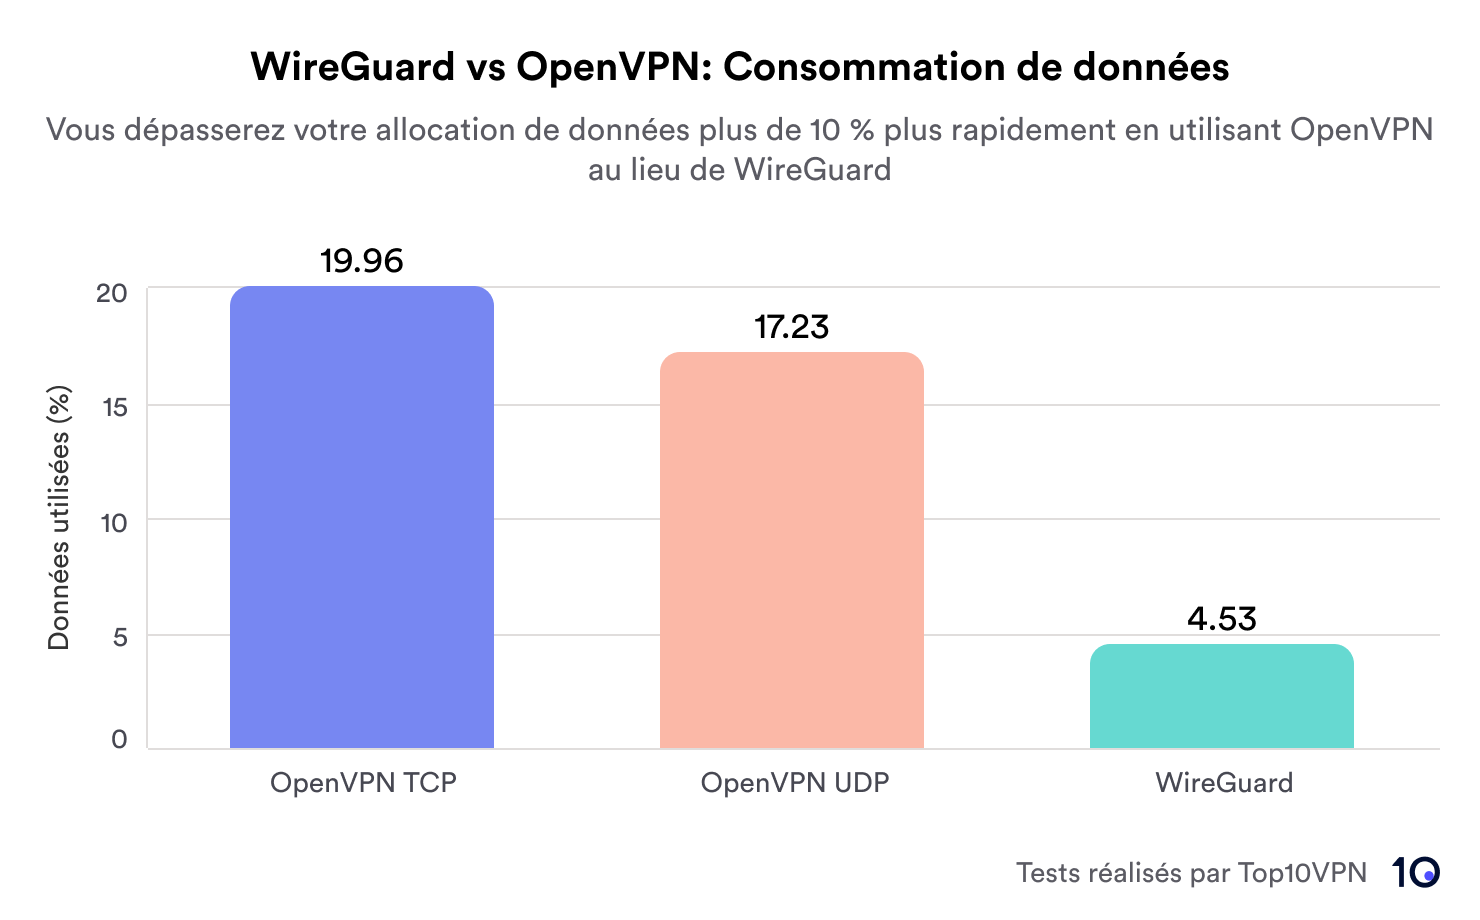 diagramme à barres montrant la consommation de données de OpenVPN TCP (+19,96 %), de OpenVPN UDP (+17,23 %) et de WireGuard (+4,53 %)